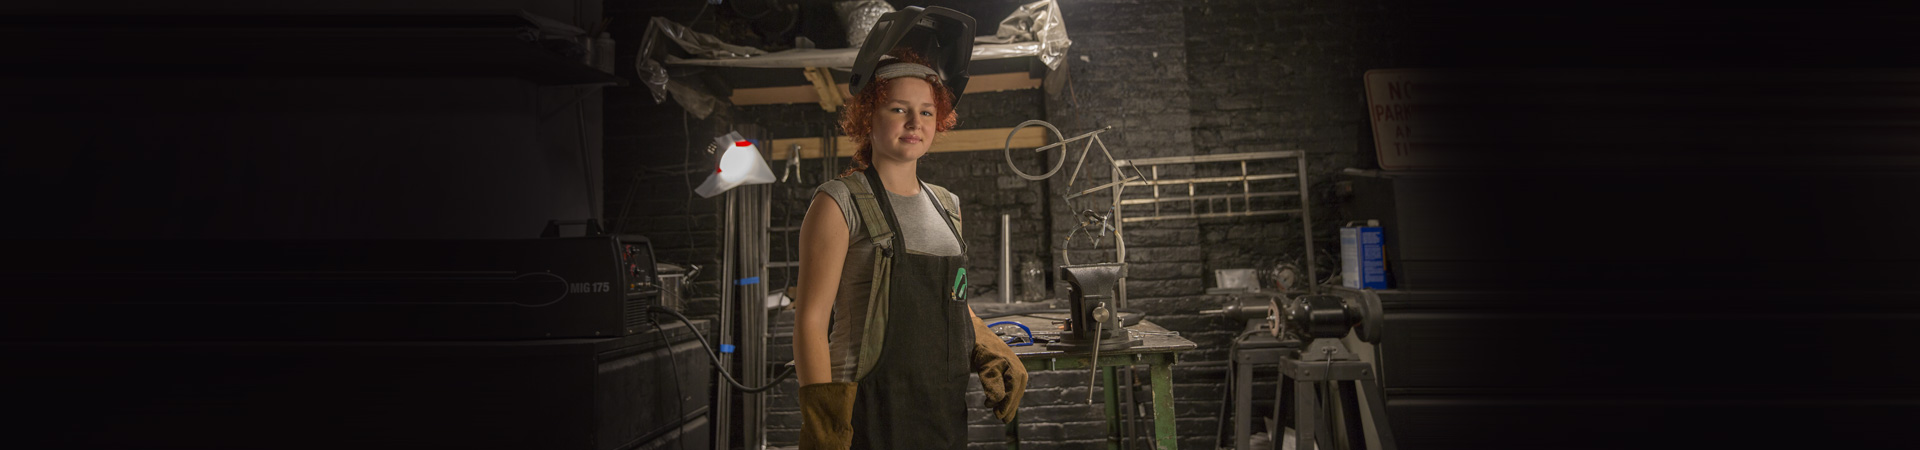  girl wearing welding gear in a metal shop 